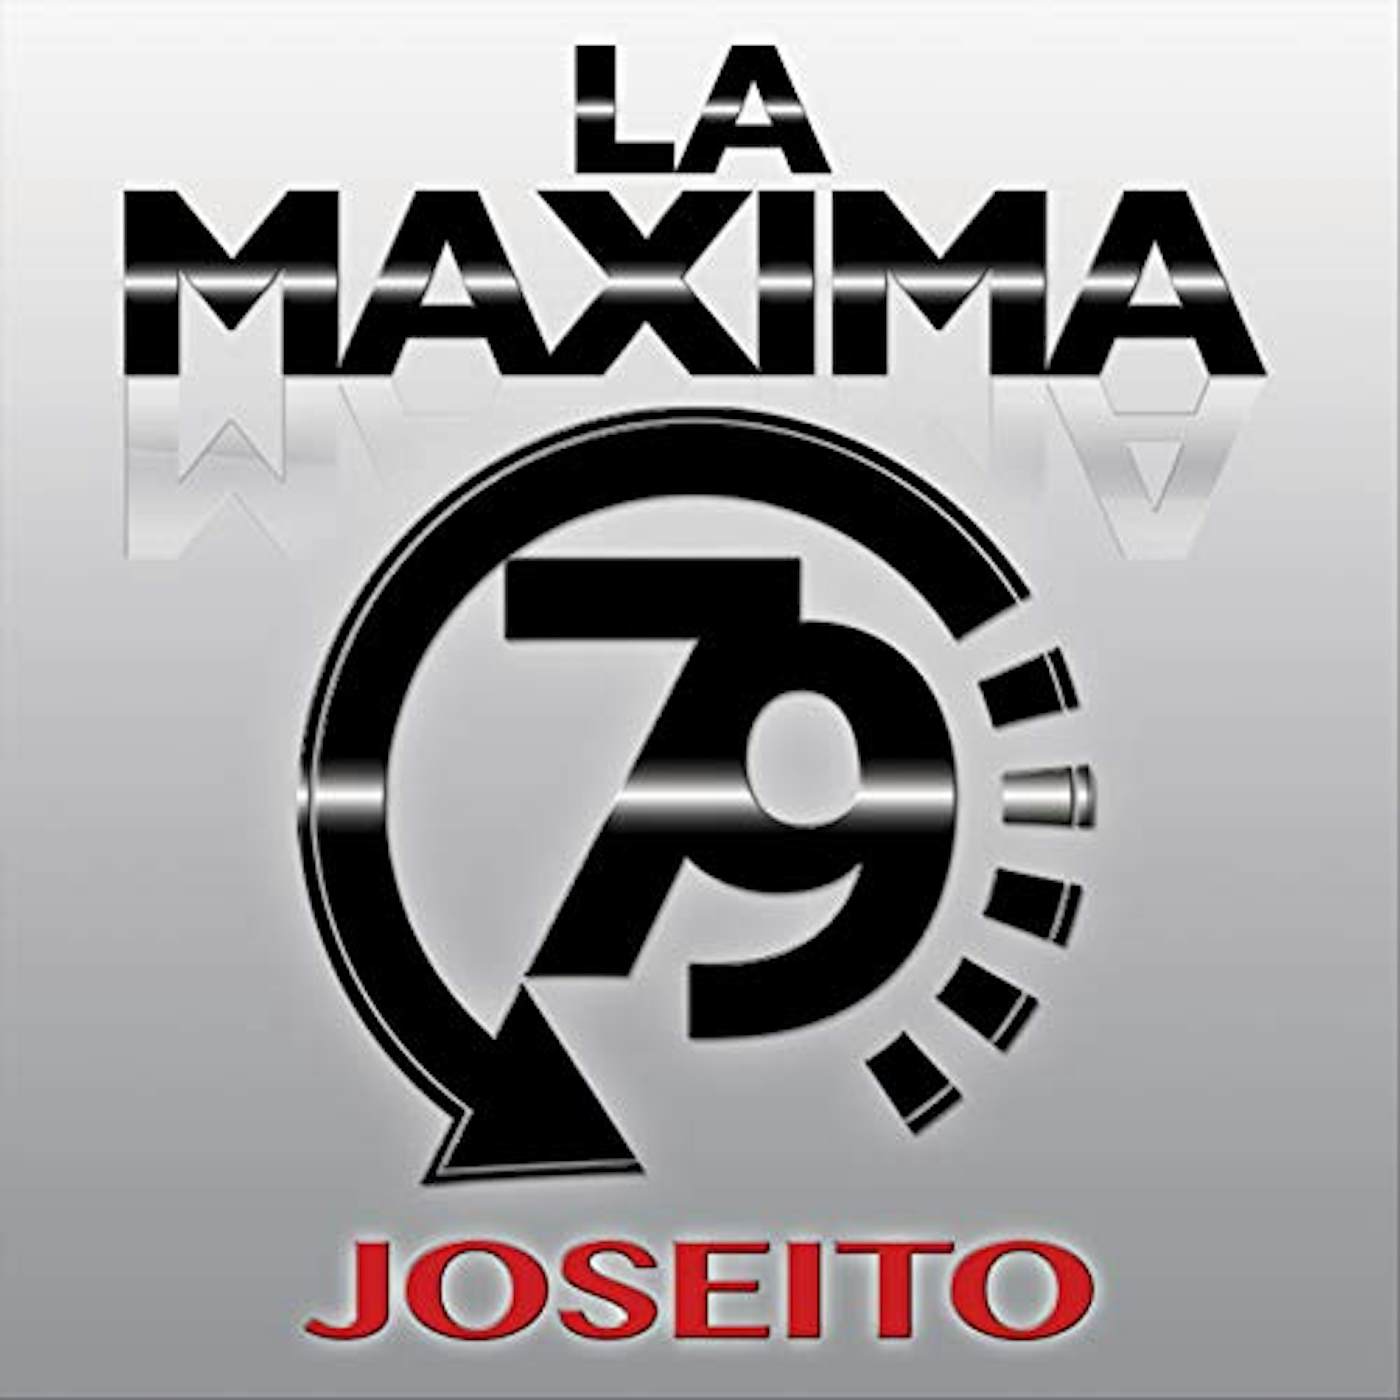 La Maxima 79 Joseito Vinyl Record